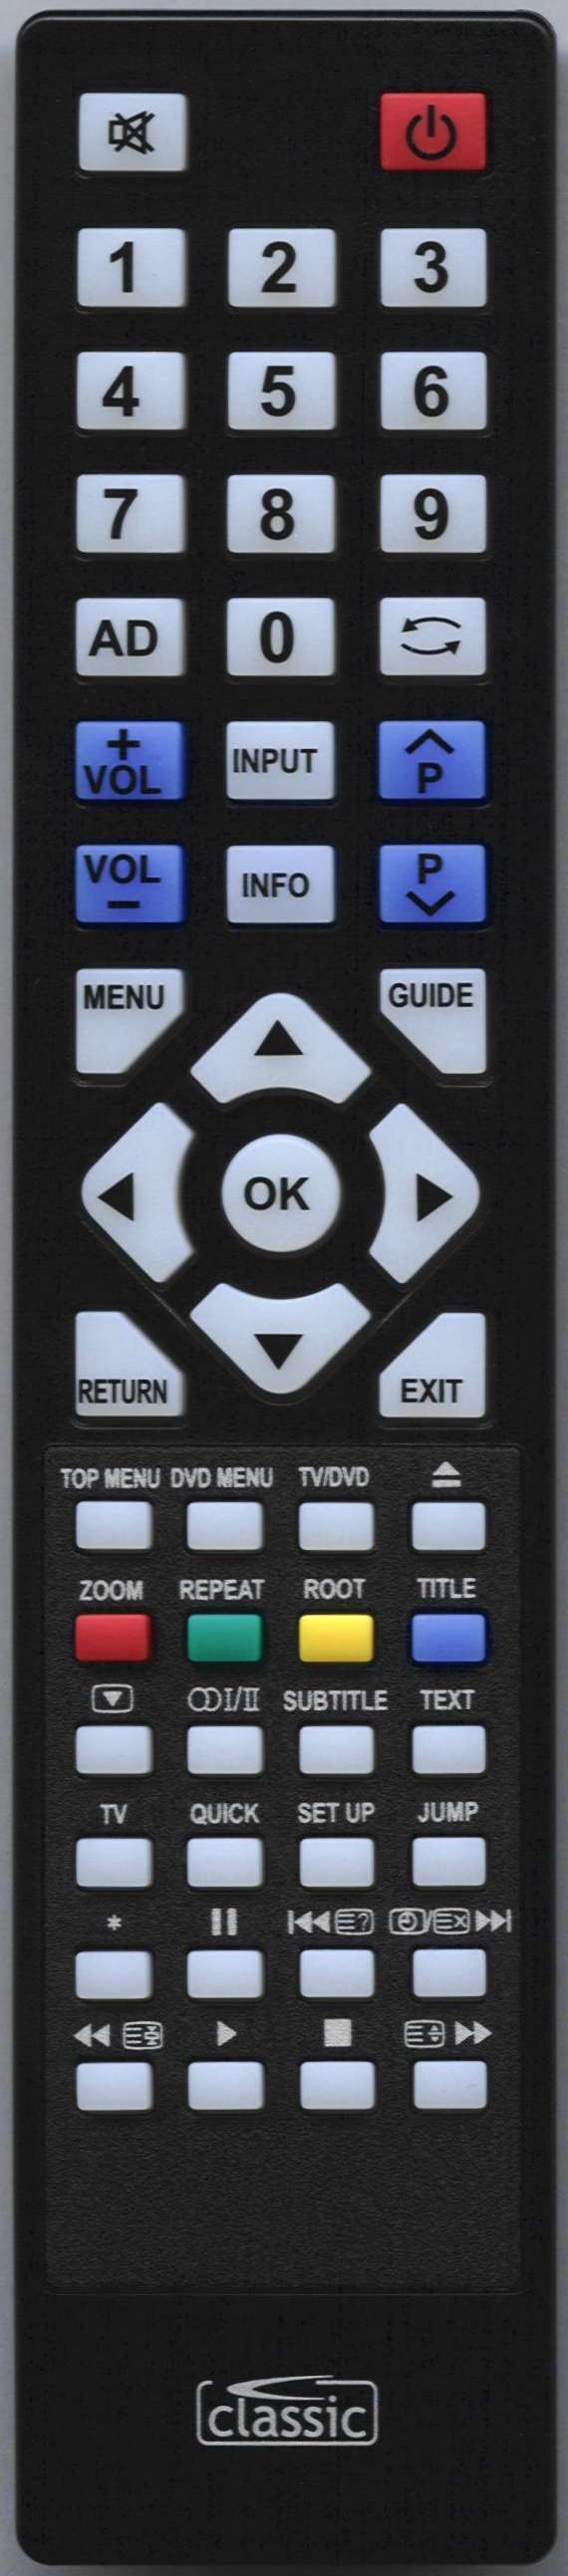 TOSHIBA 22DL834B Remote Control